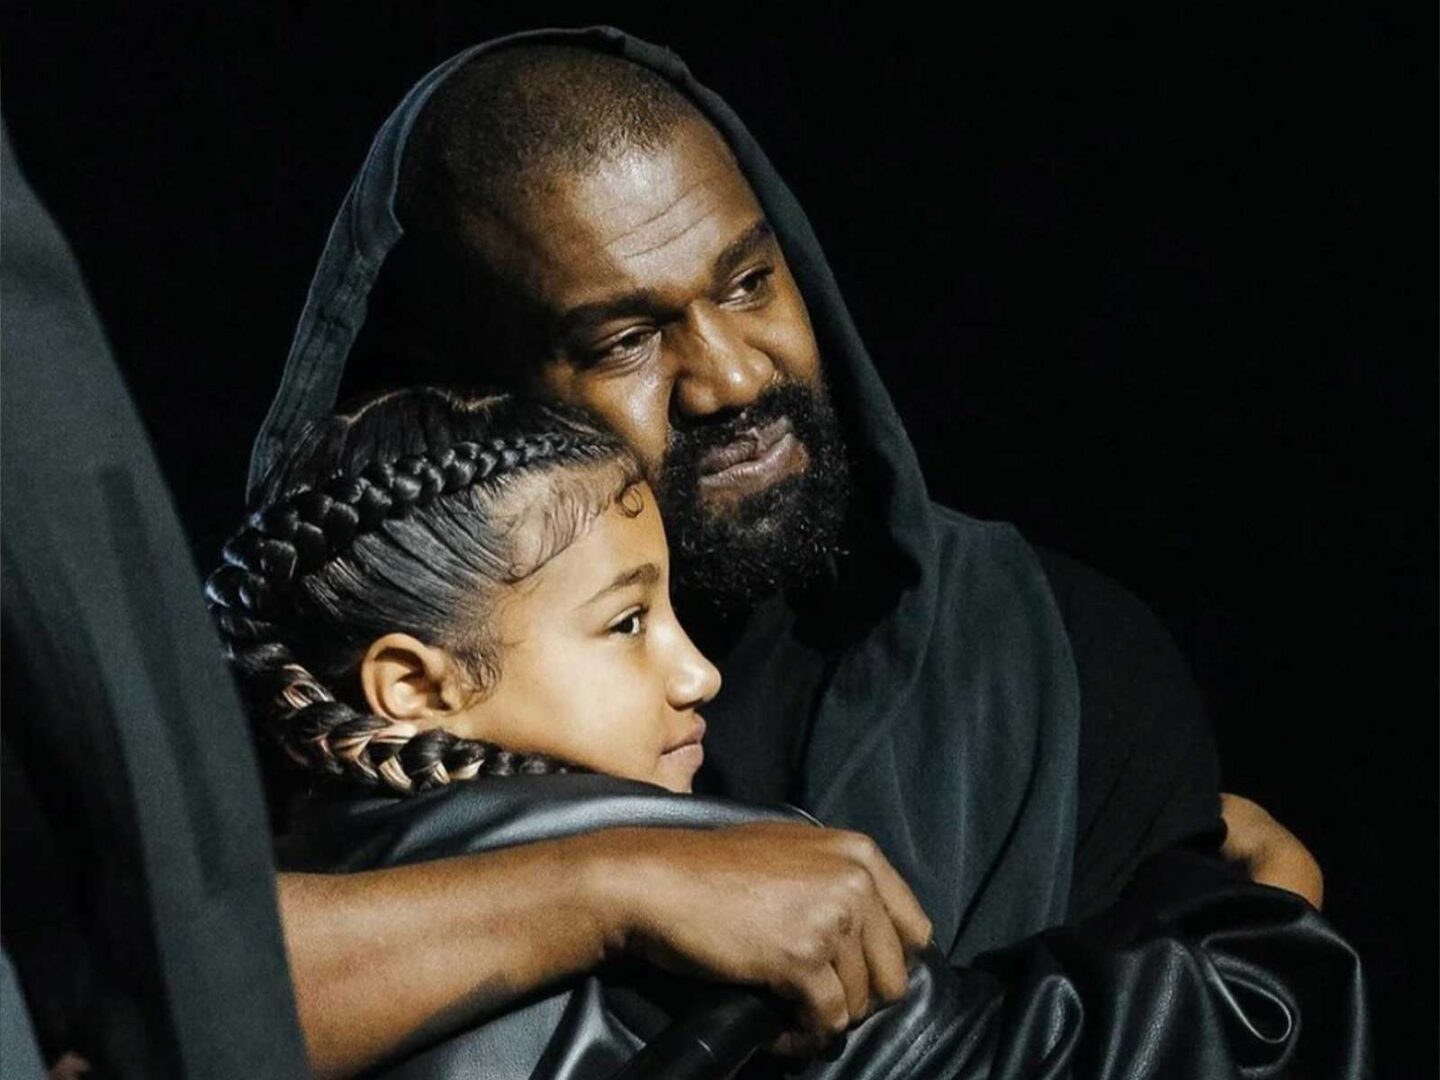 Kanye lanza el video de “Talking” en colaboración con su hija North